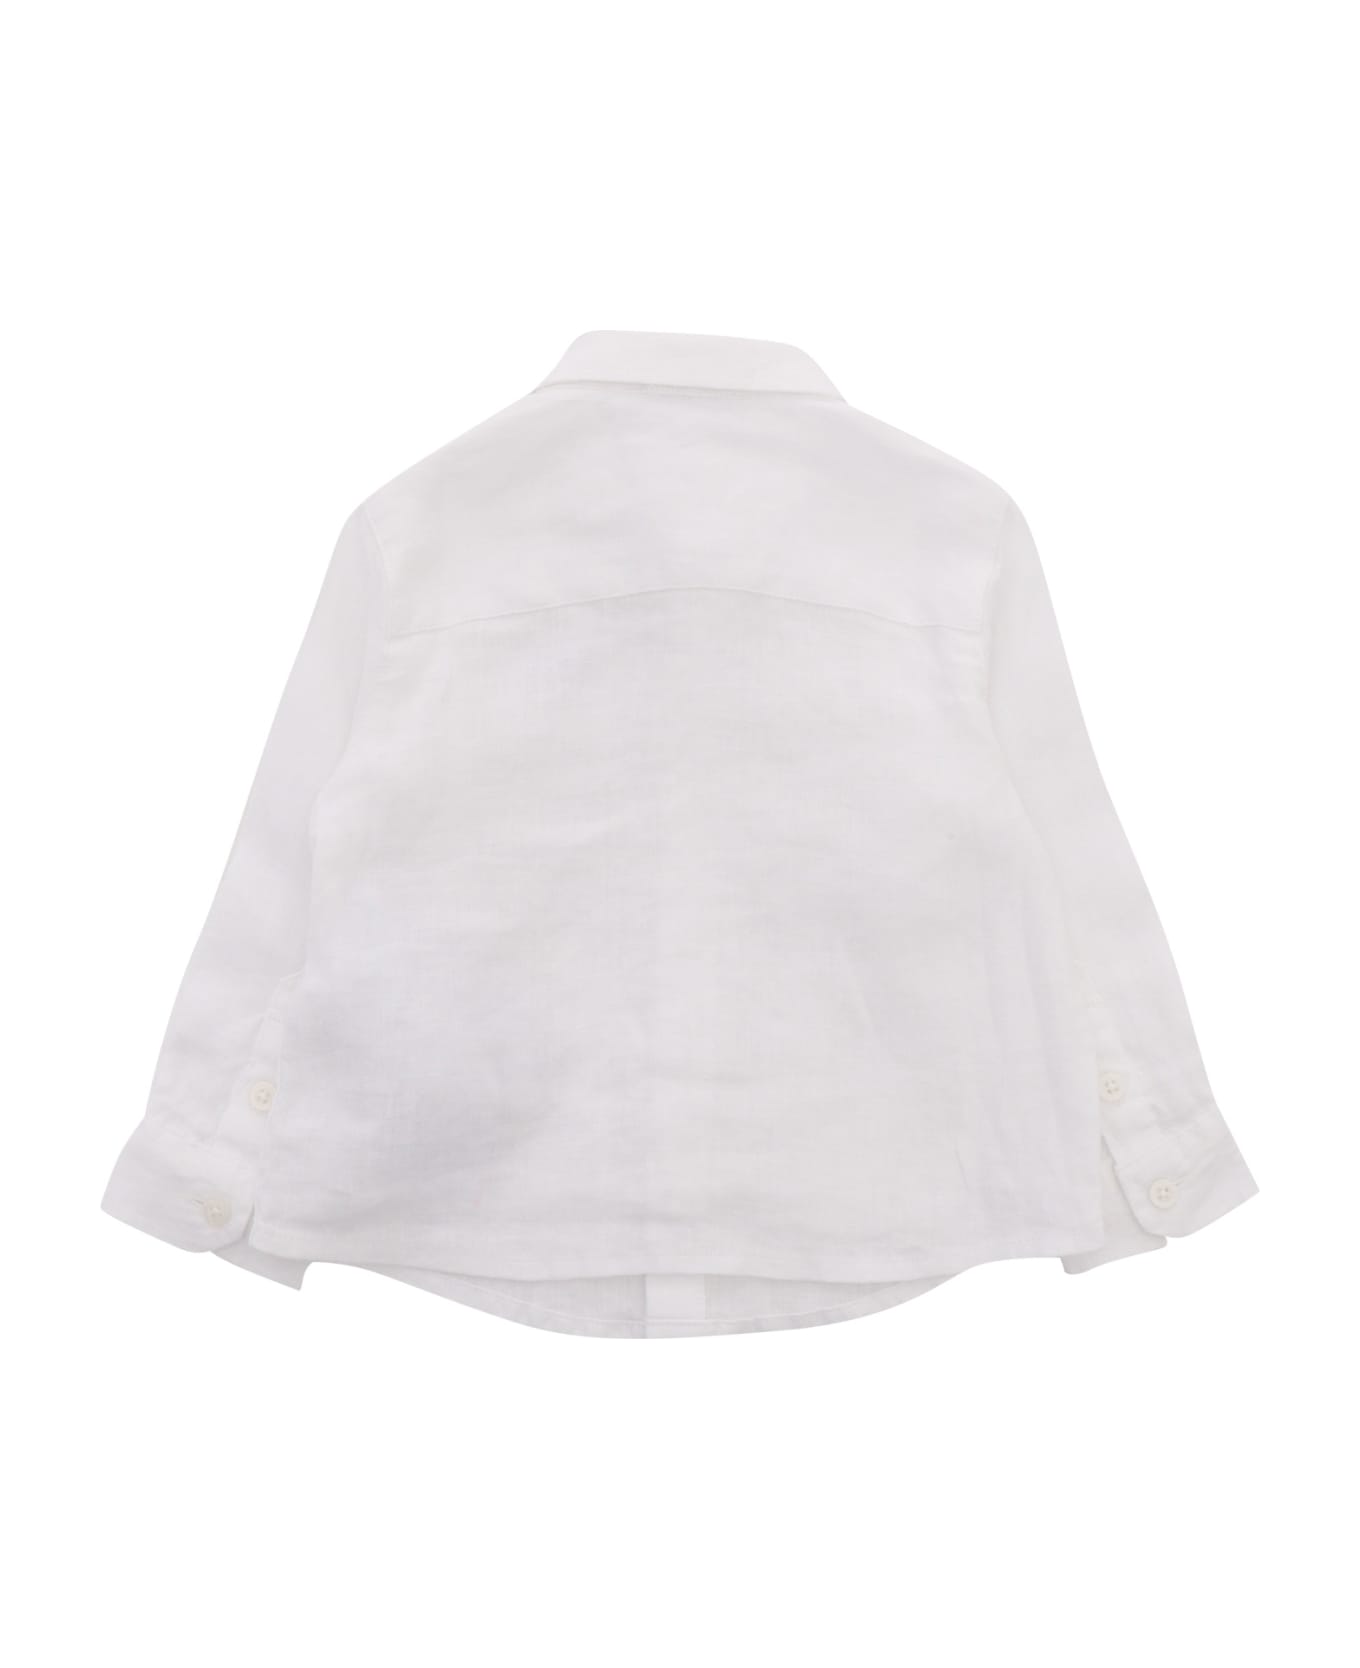 Emporio Armani White Shirt With Logo - WHITE シャツ